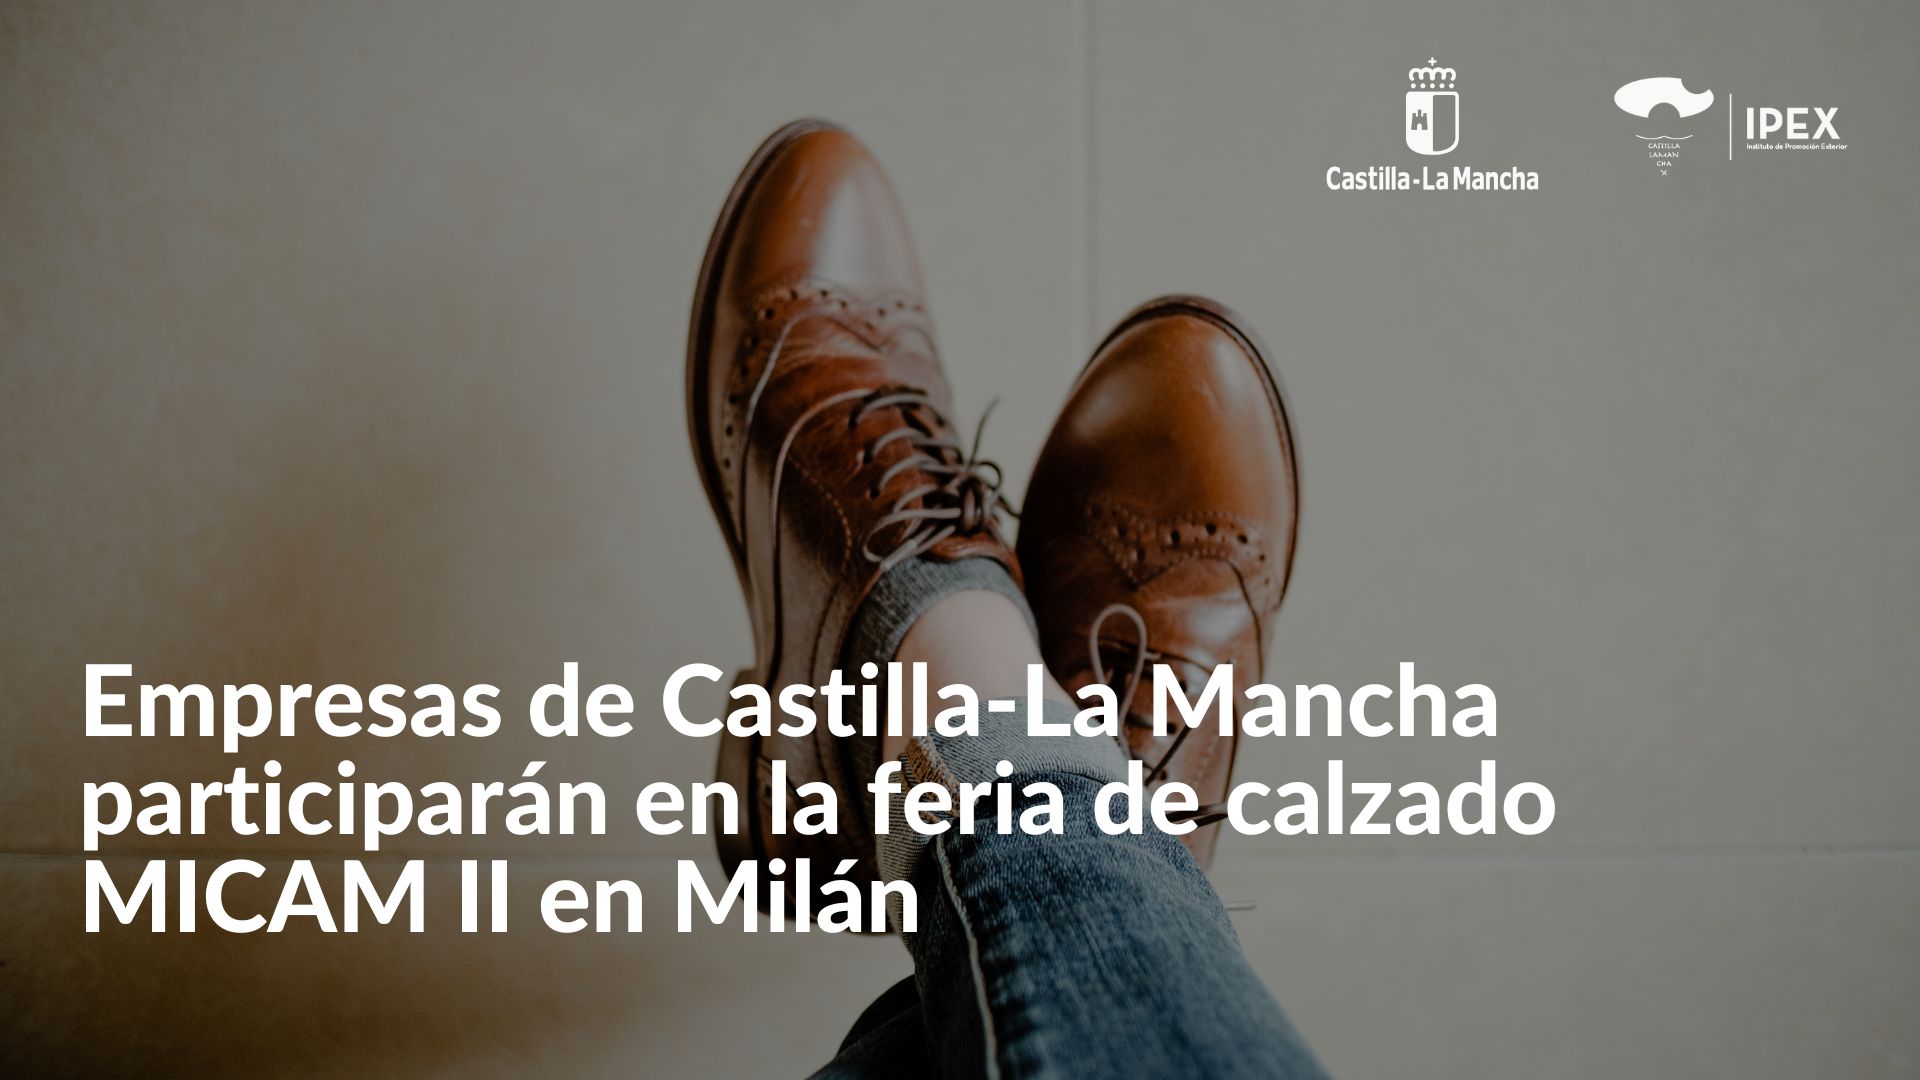 Empresas de Castilla-La Mancha participarán en la feria de calzado MICAM II Milán